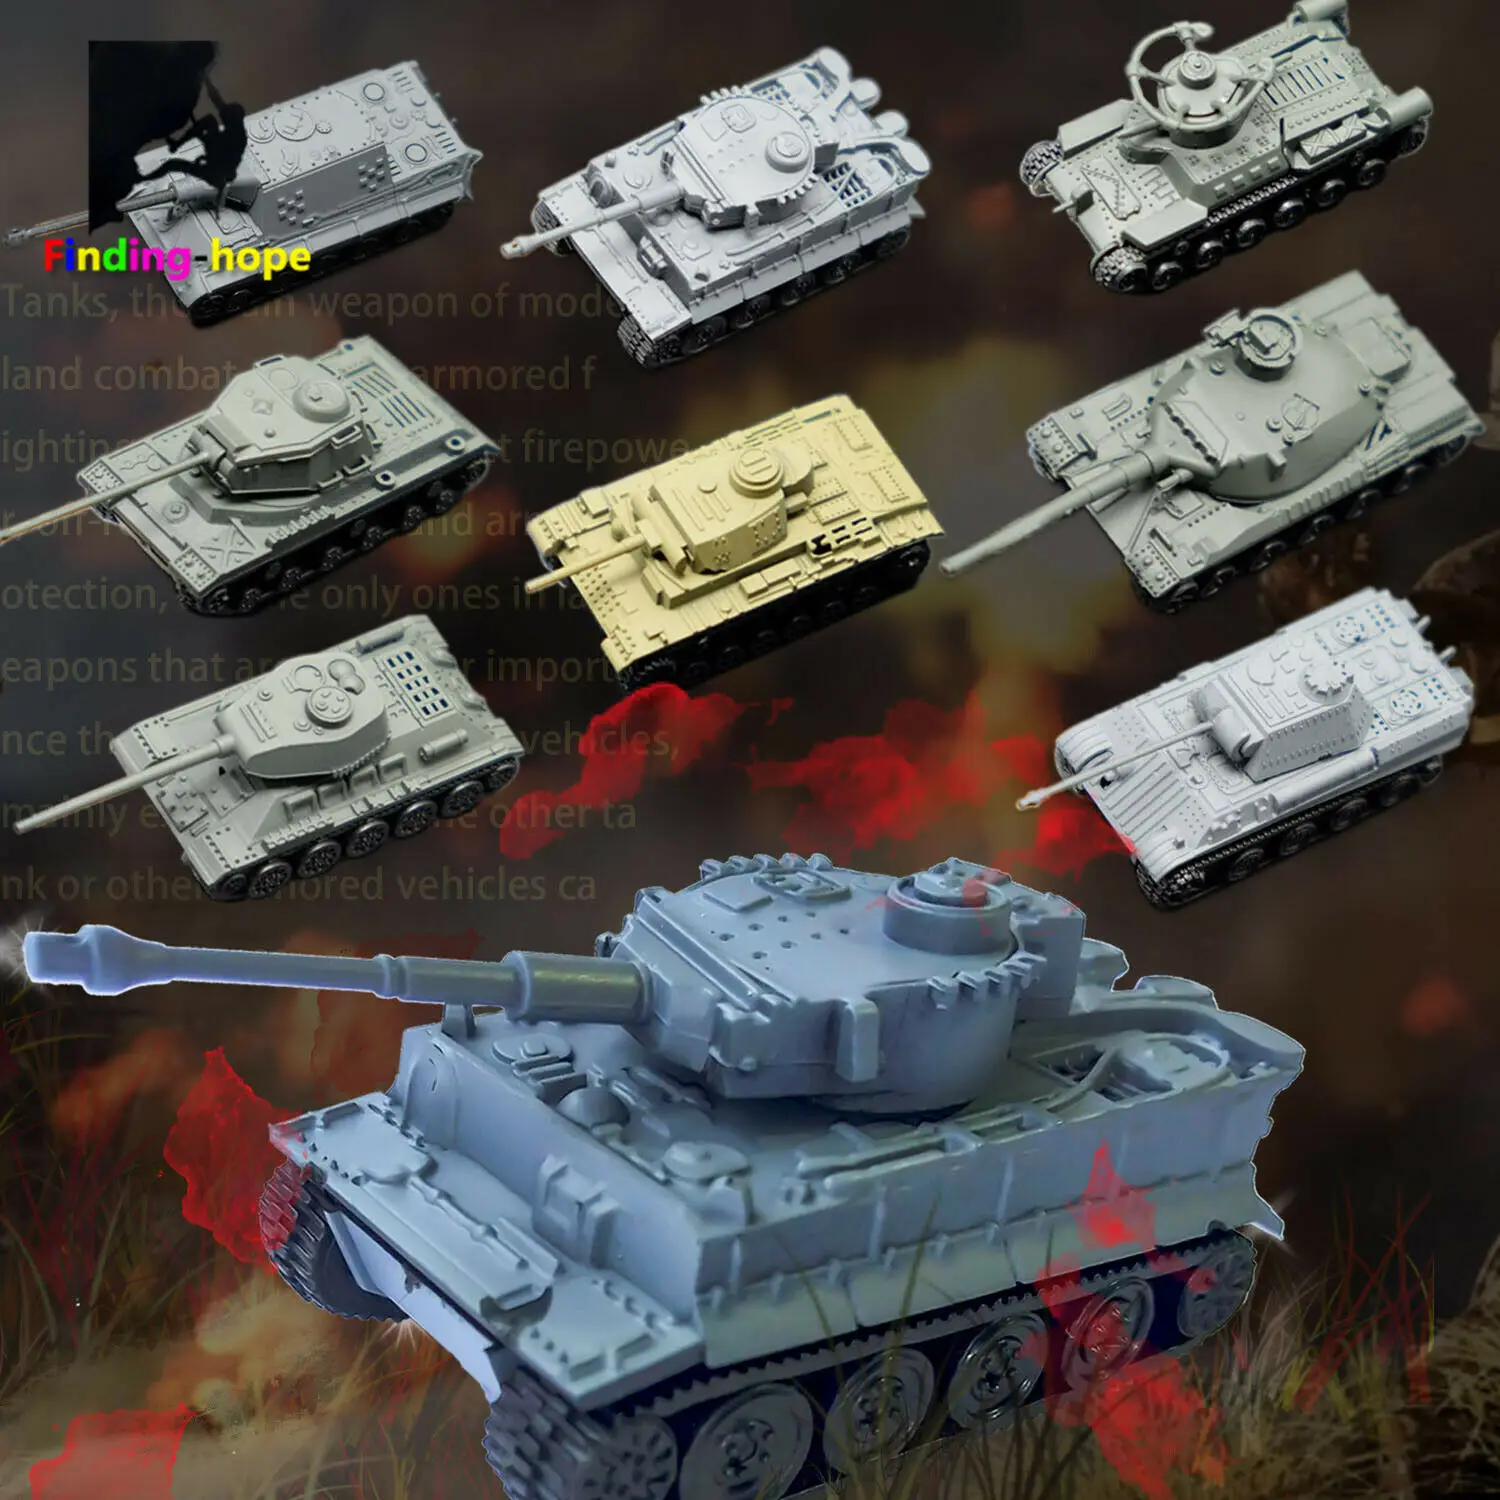 

1/144 Scale 4D Assemble Tank Model Panzerkampfwagen T-34/85 AMX-30MAIN Building Bricks World War Military Army Battle Tank